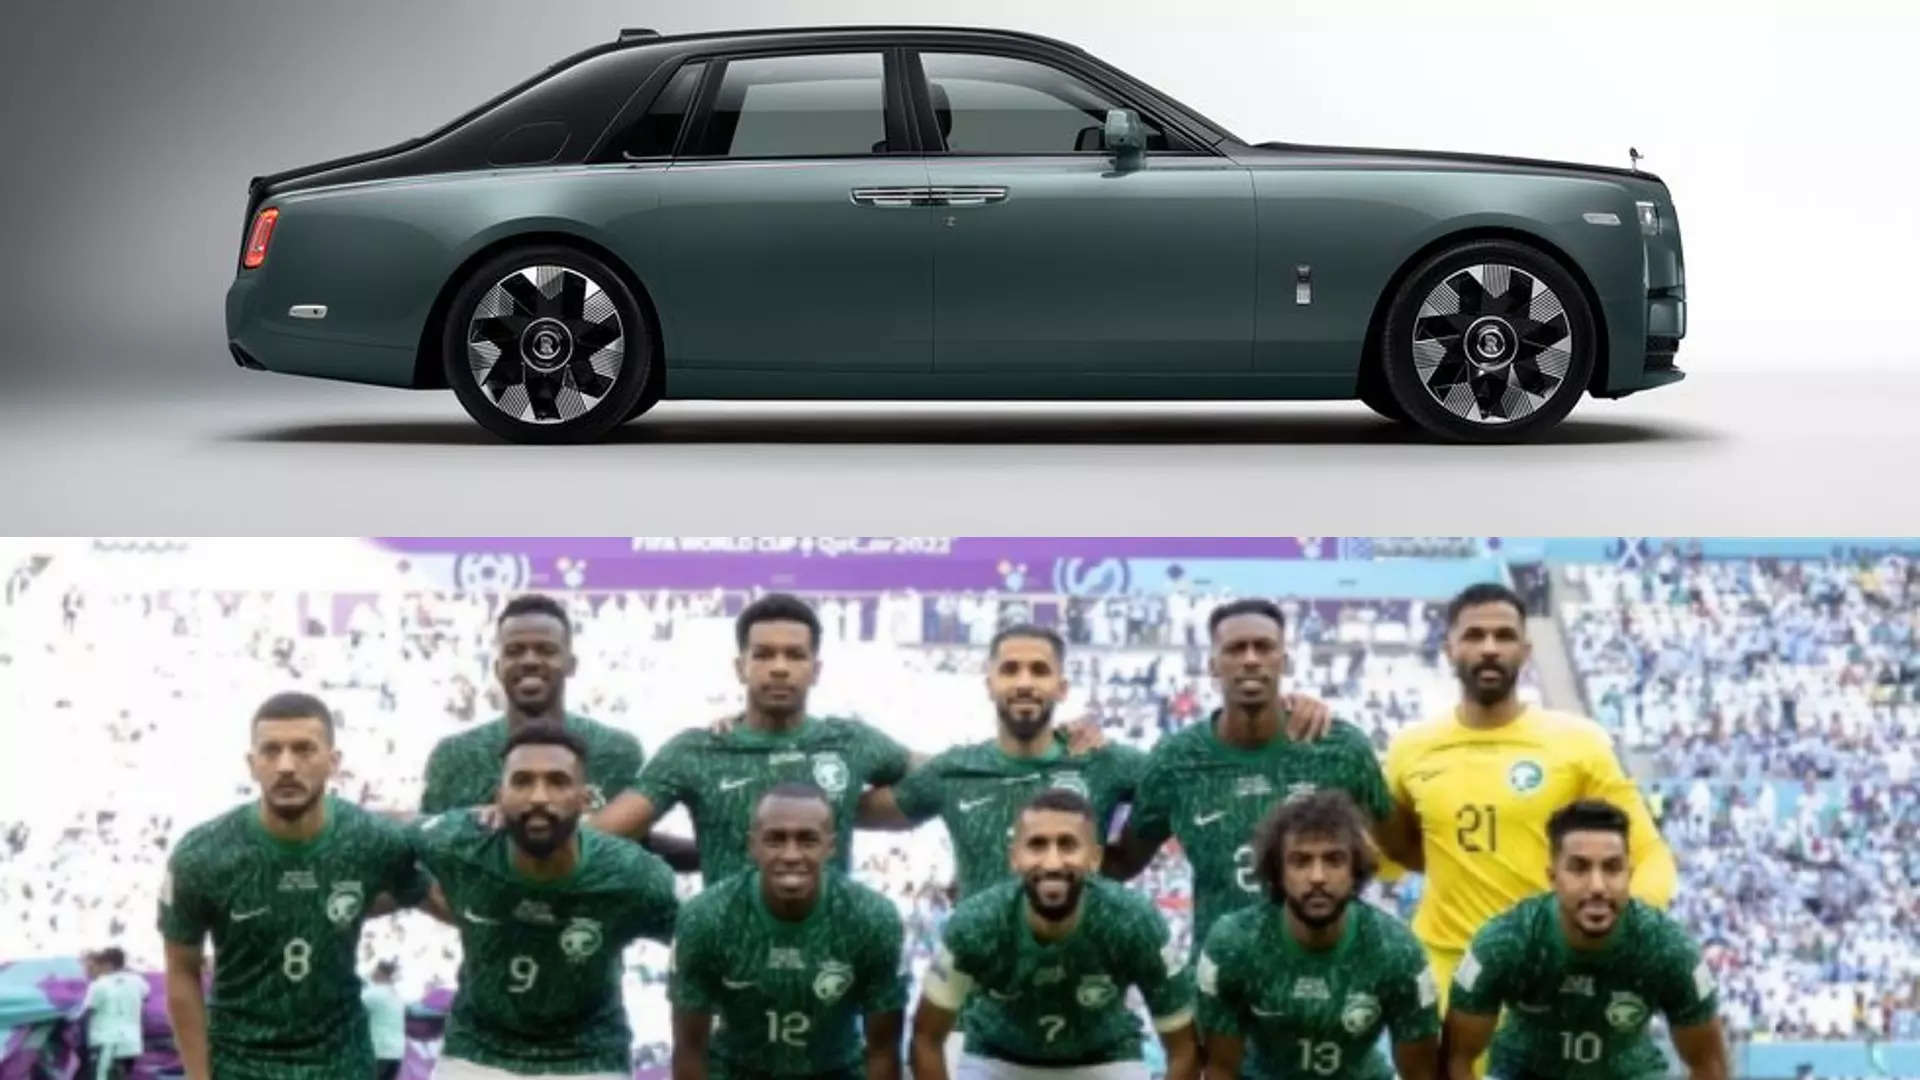 Los jugadores de la selección saudí reciben un Rolls-Royce Phantom tras su victoria sobre Argentina